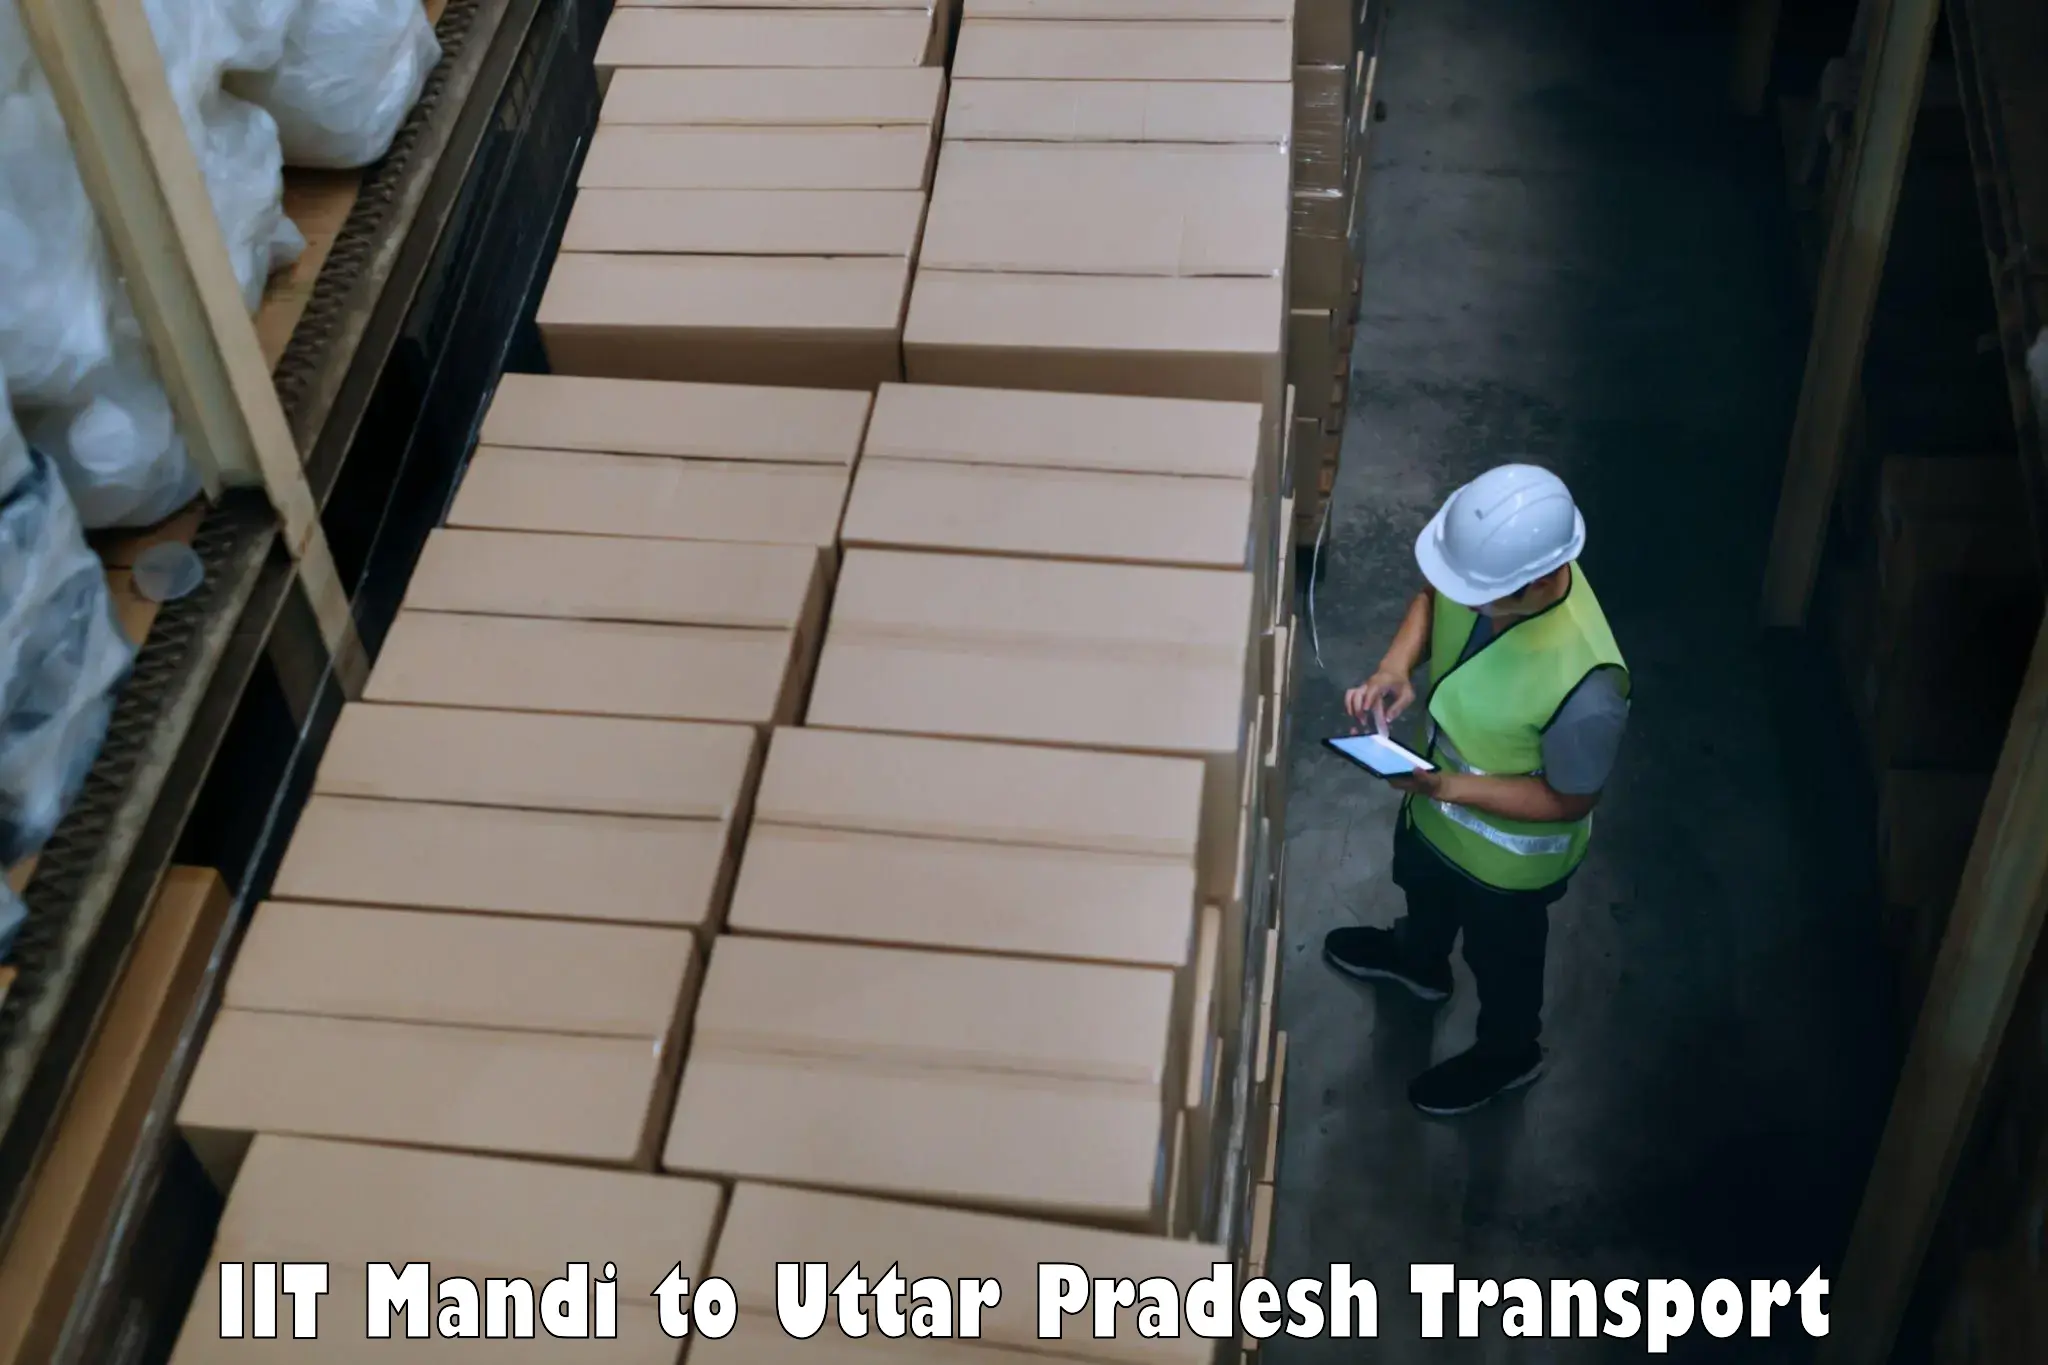 Pick up transport service IIT Mandi to Thakurdwara